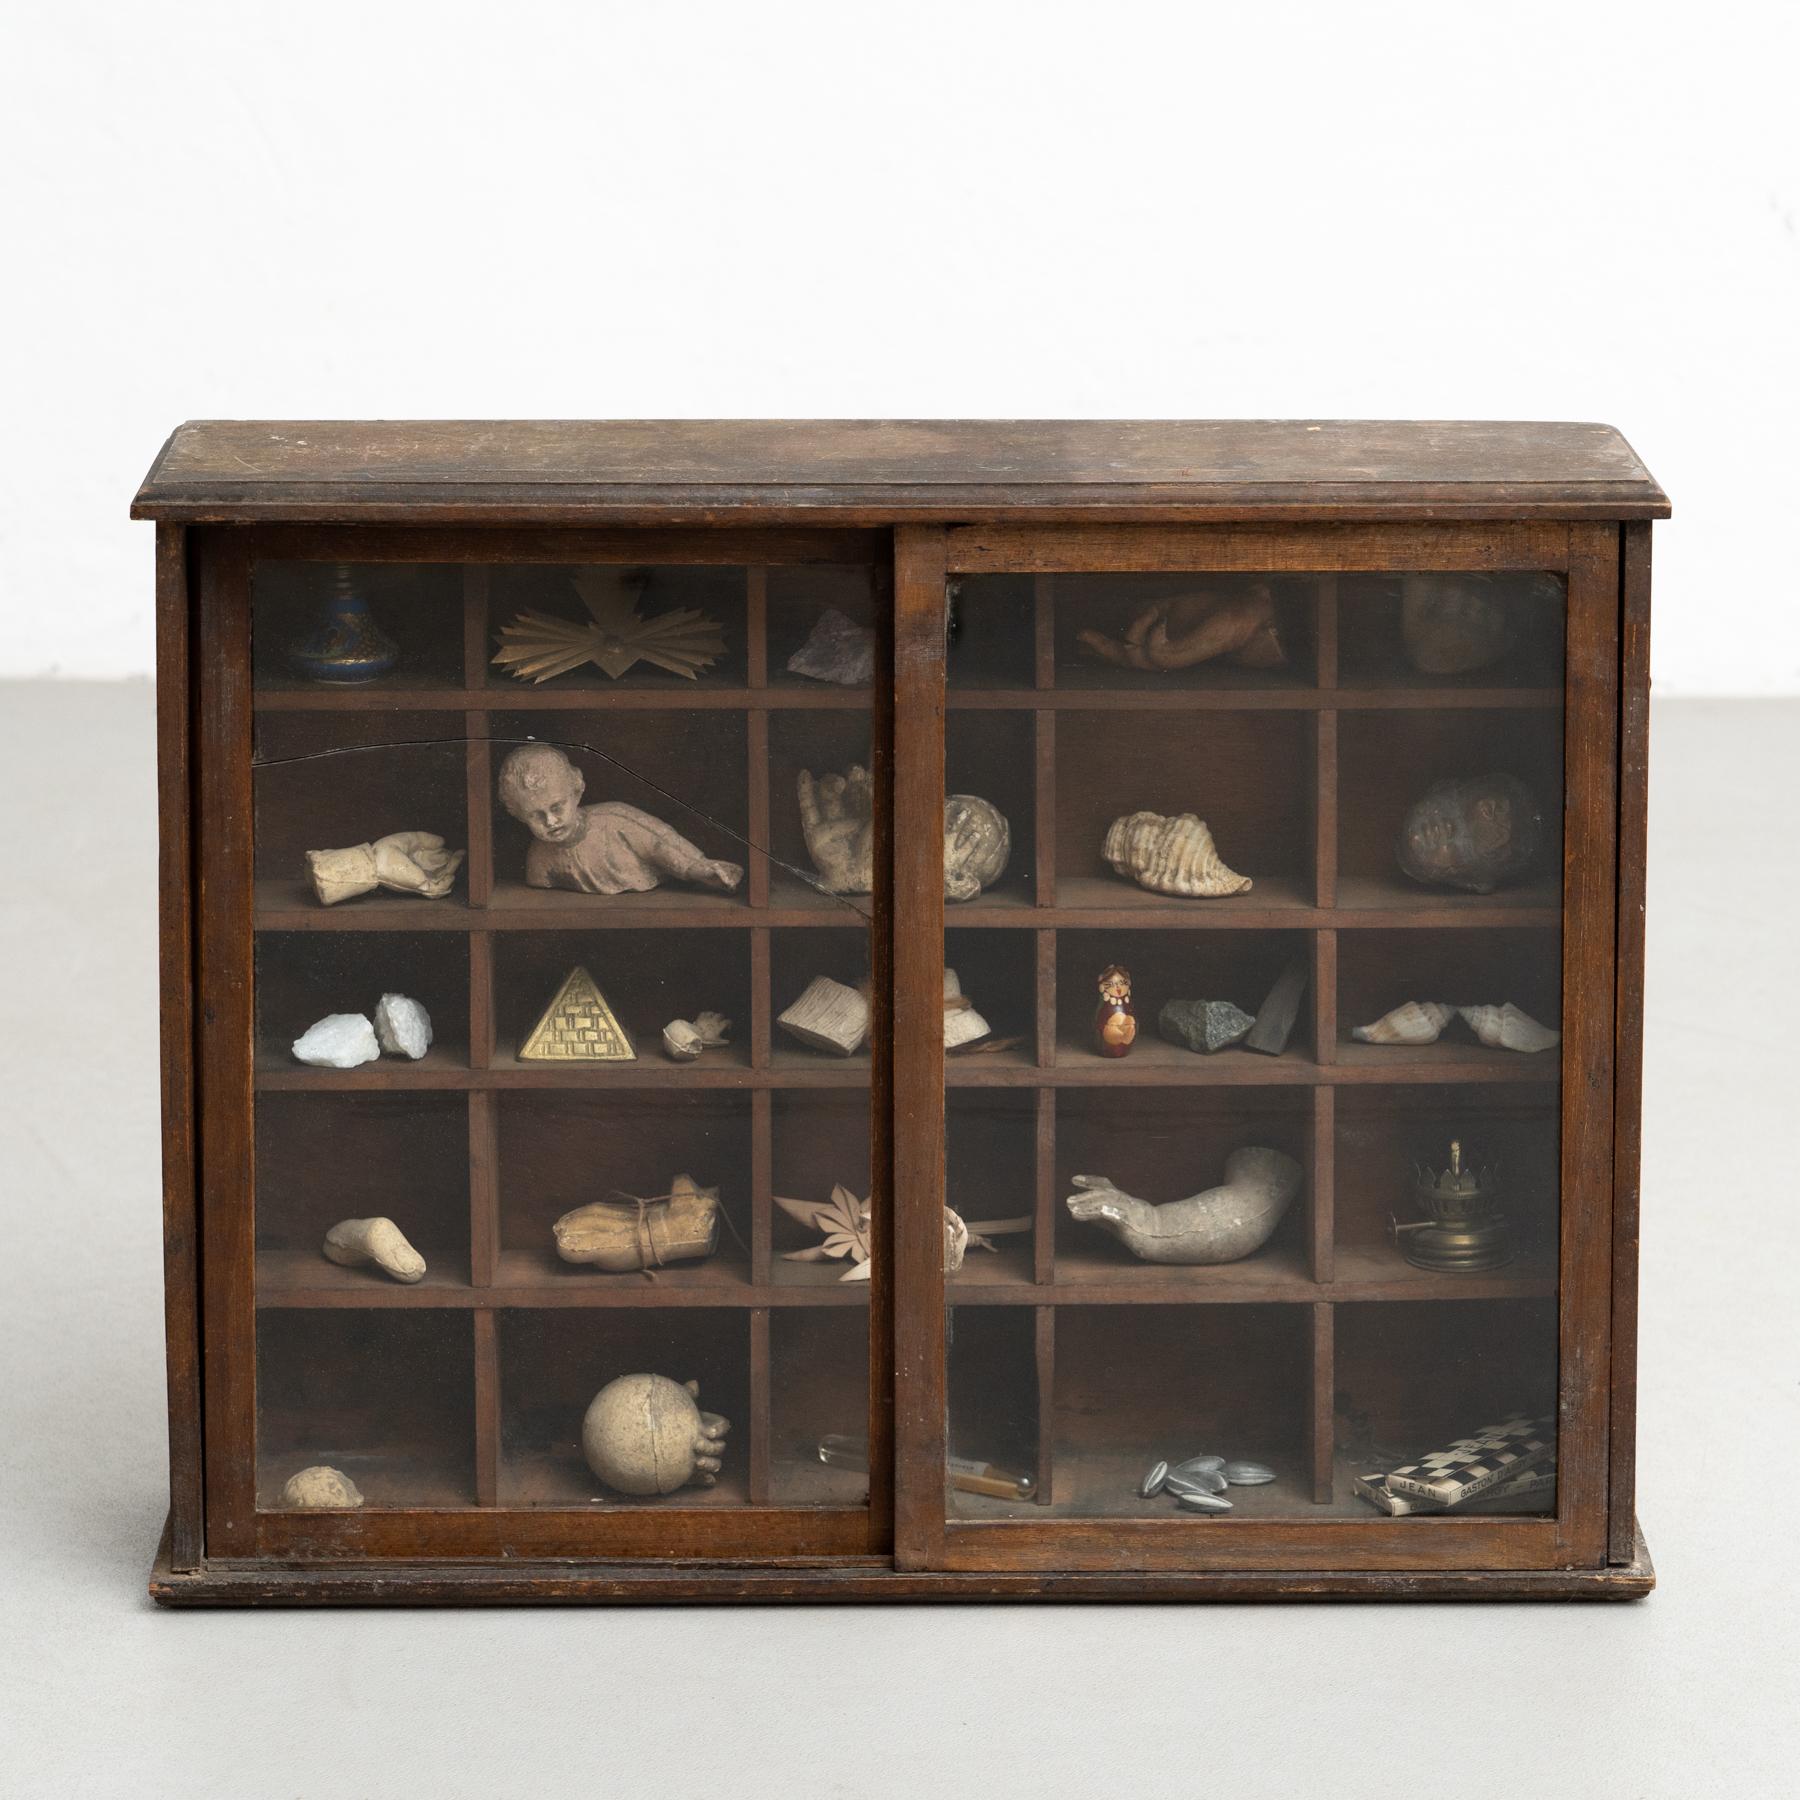 Modern Cabinet of Curiosities Sculptural Artwork on a Wooden Cabinet, circa 1950